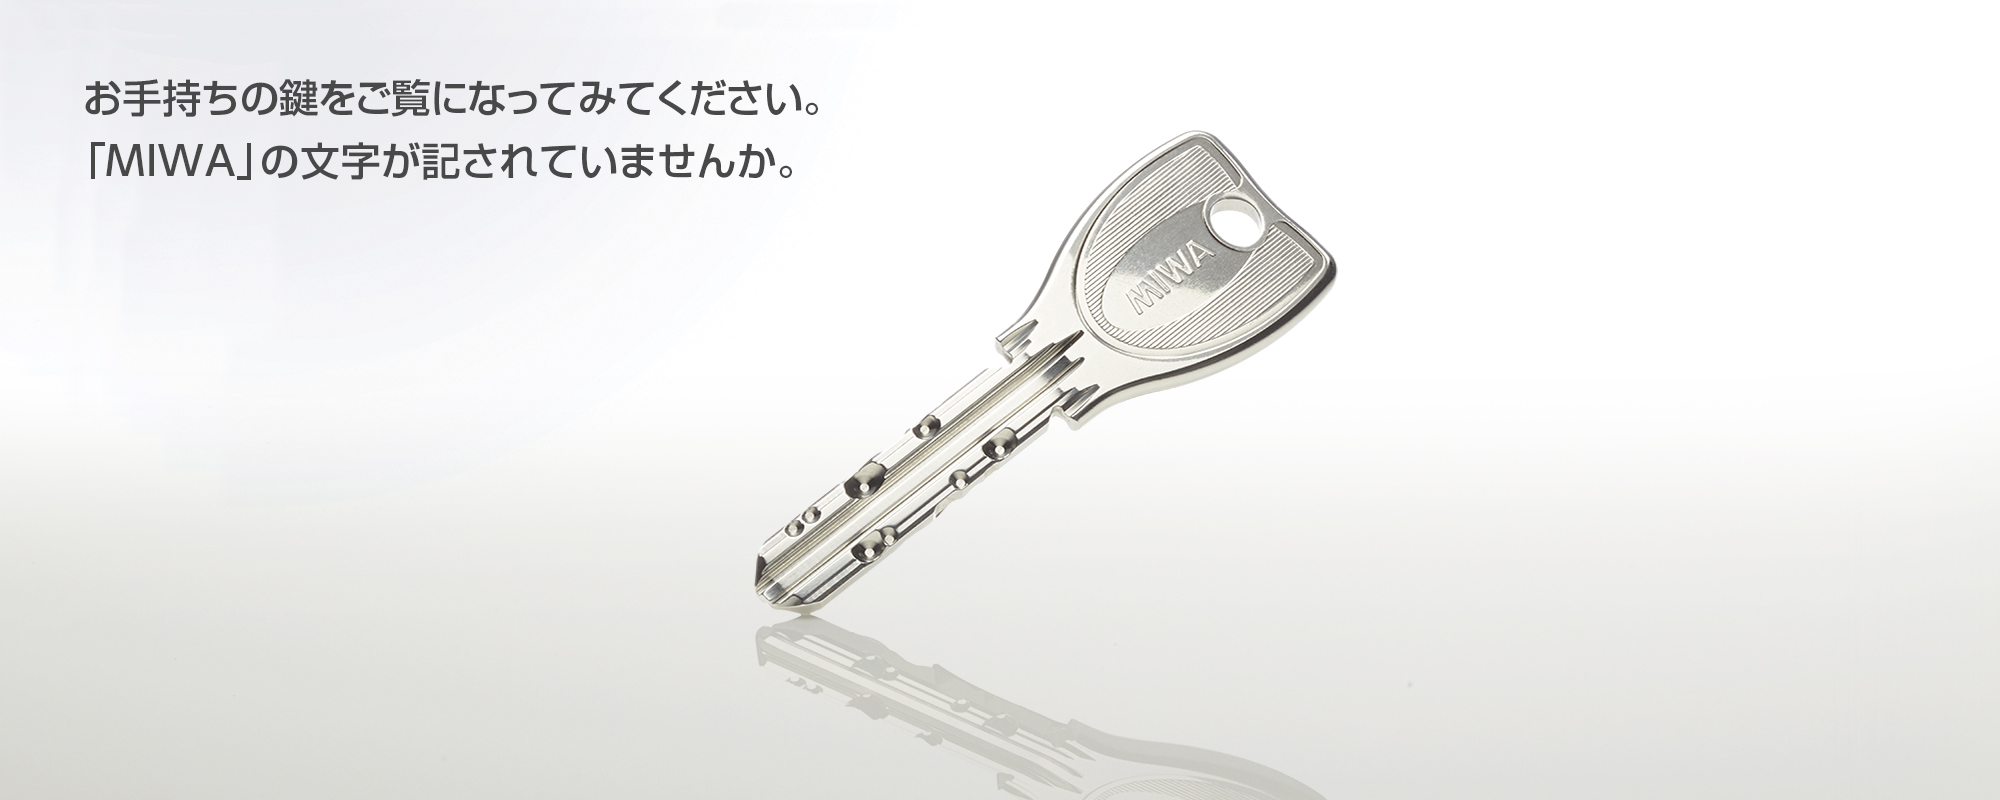 お手持ちの鍵をご覧になってみてください。『MIWA』の文字が、記されていませんか。